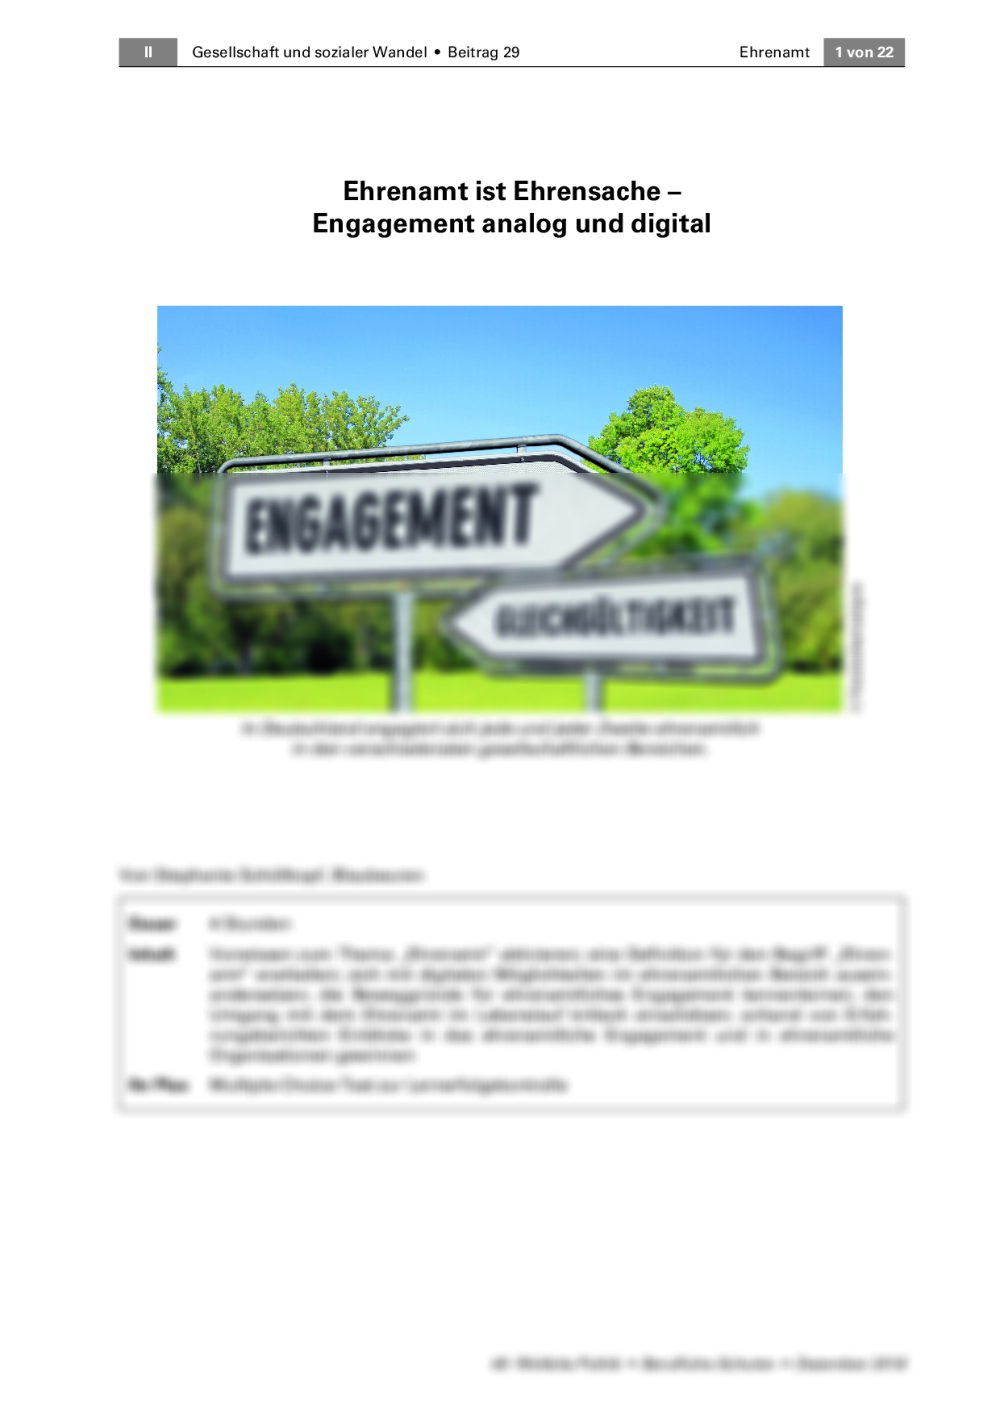 Engagement analog und digital - Seite 1